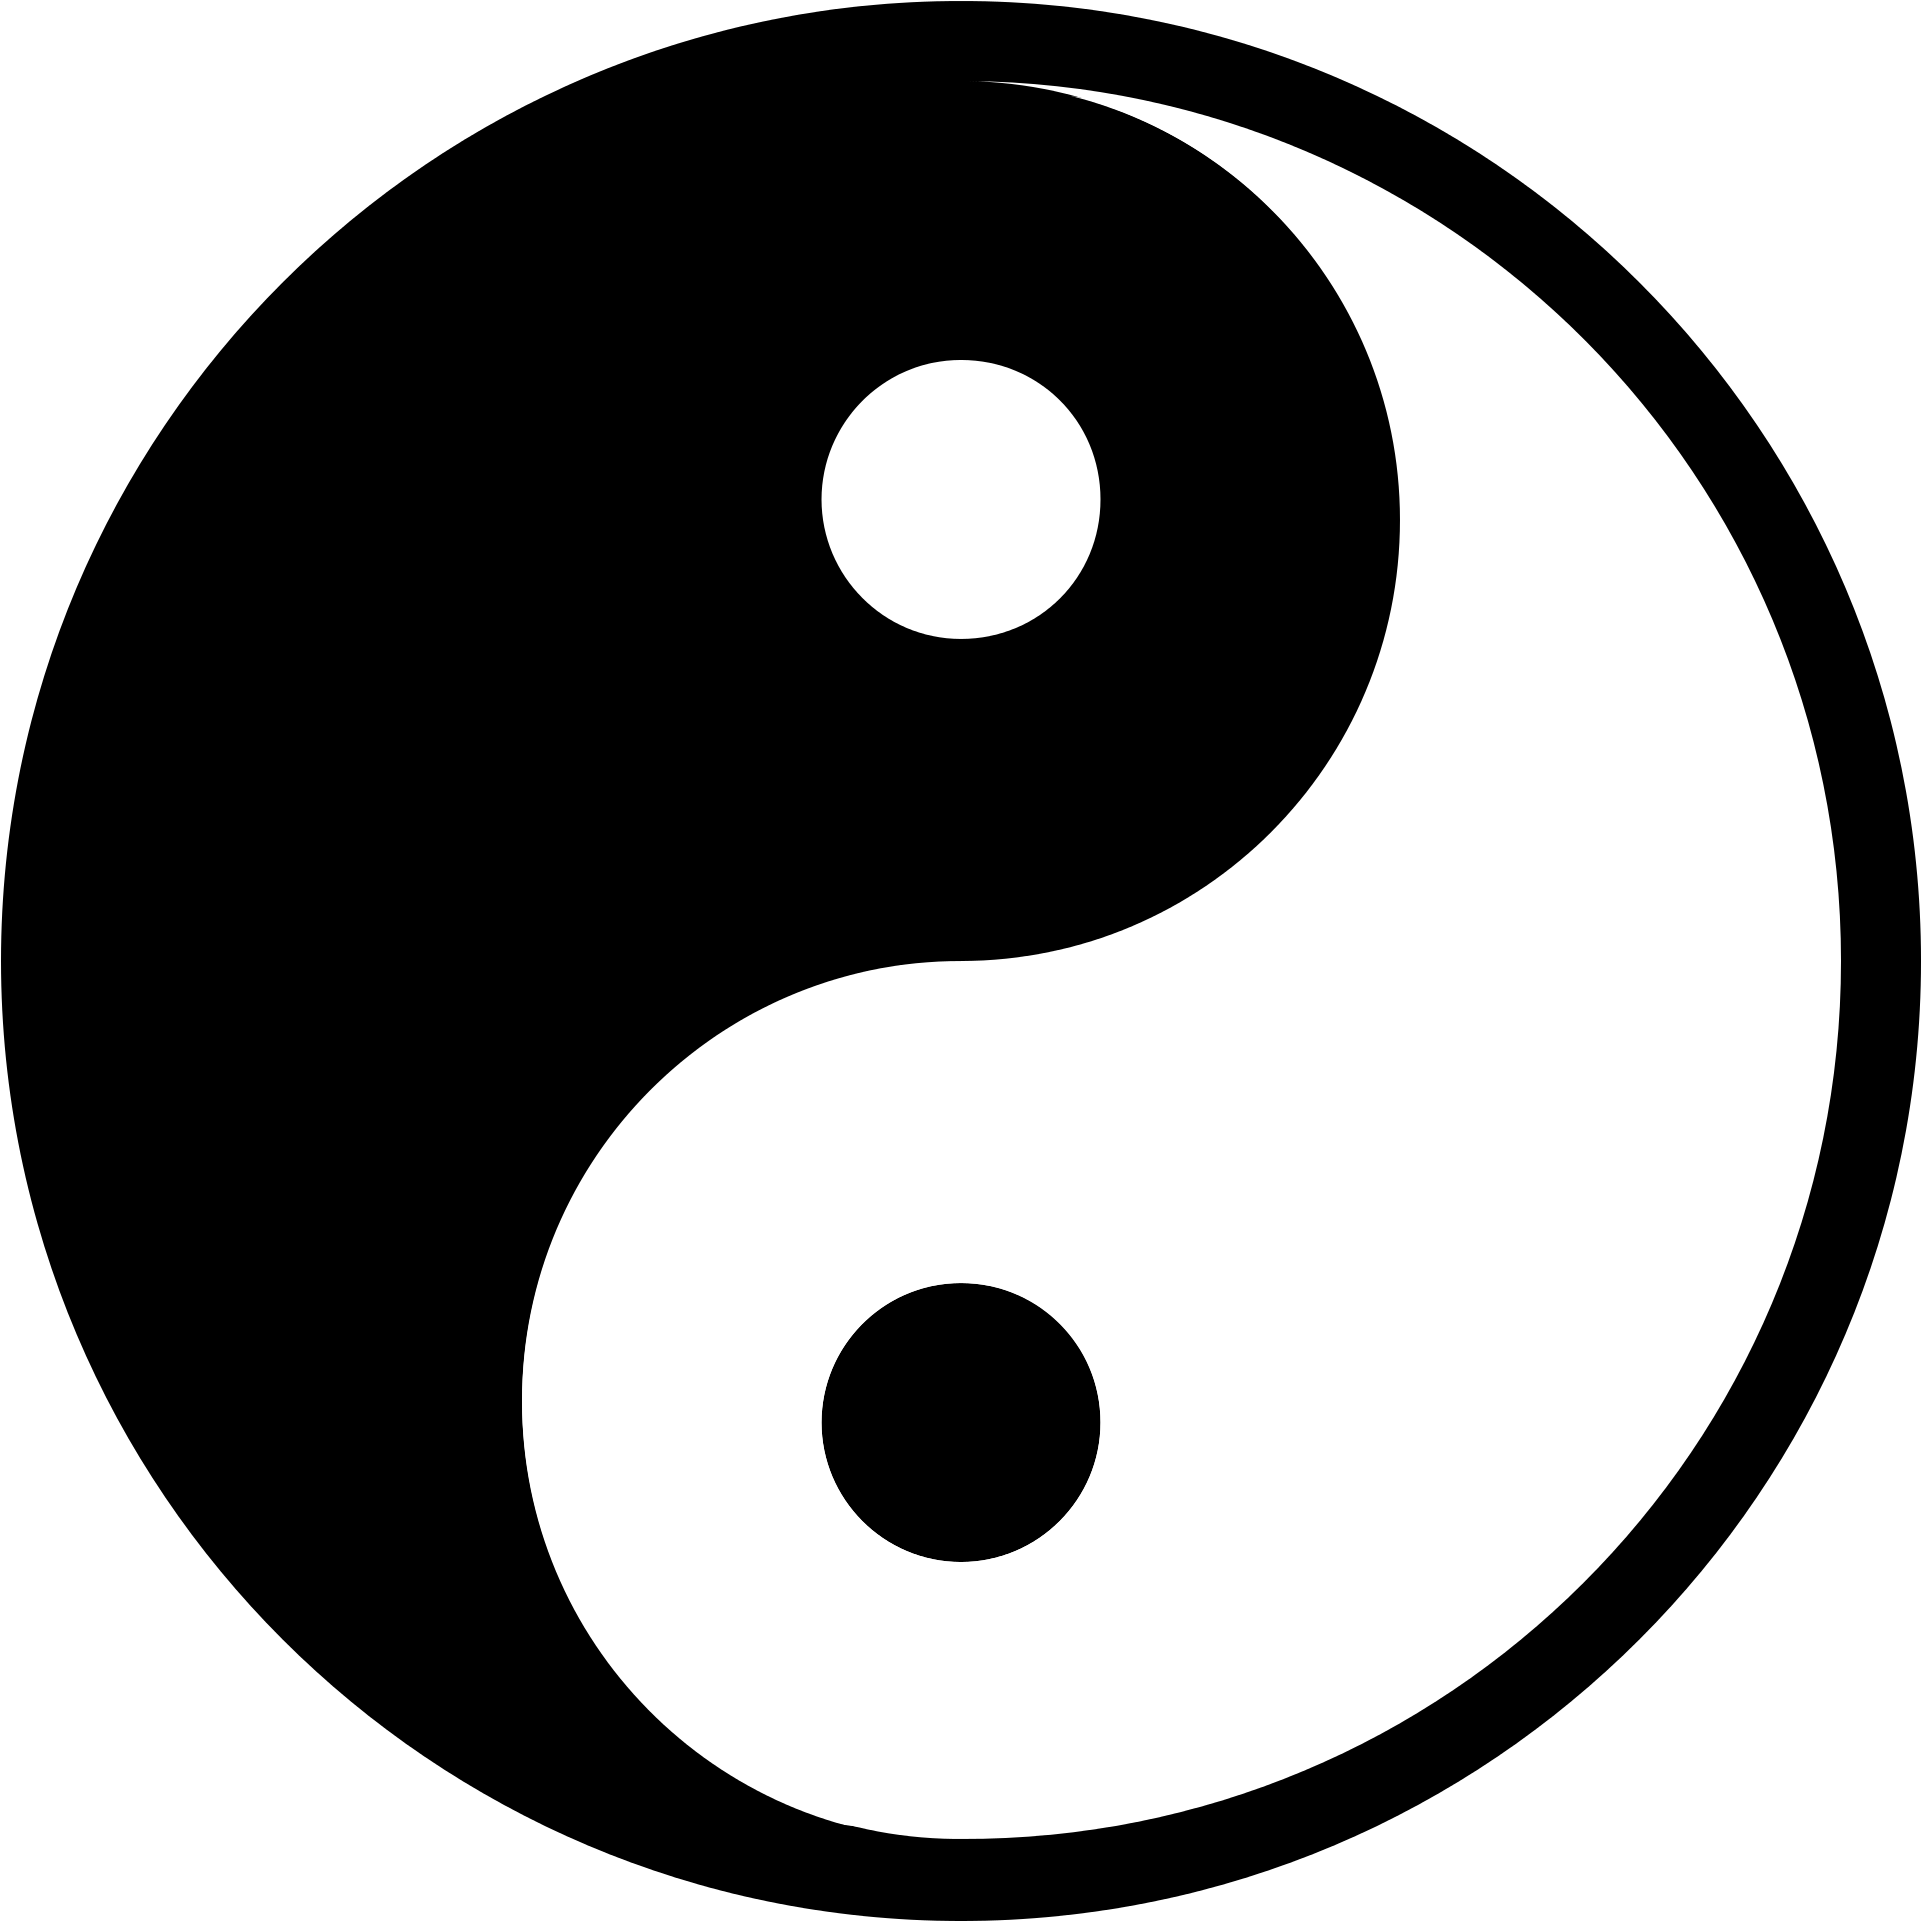 Yin and yang Symbol Clip art - yin yang png download - 500*500 - Free